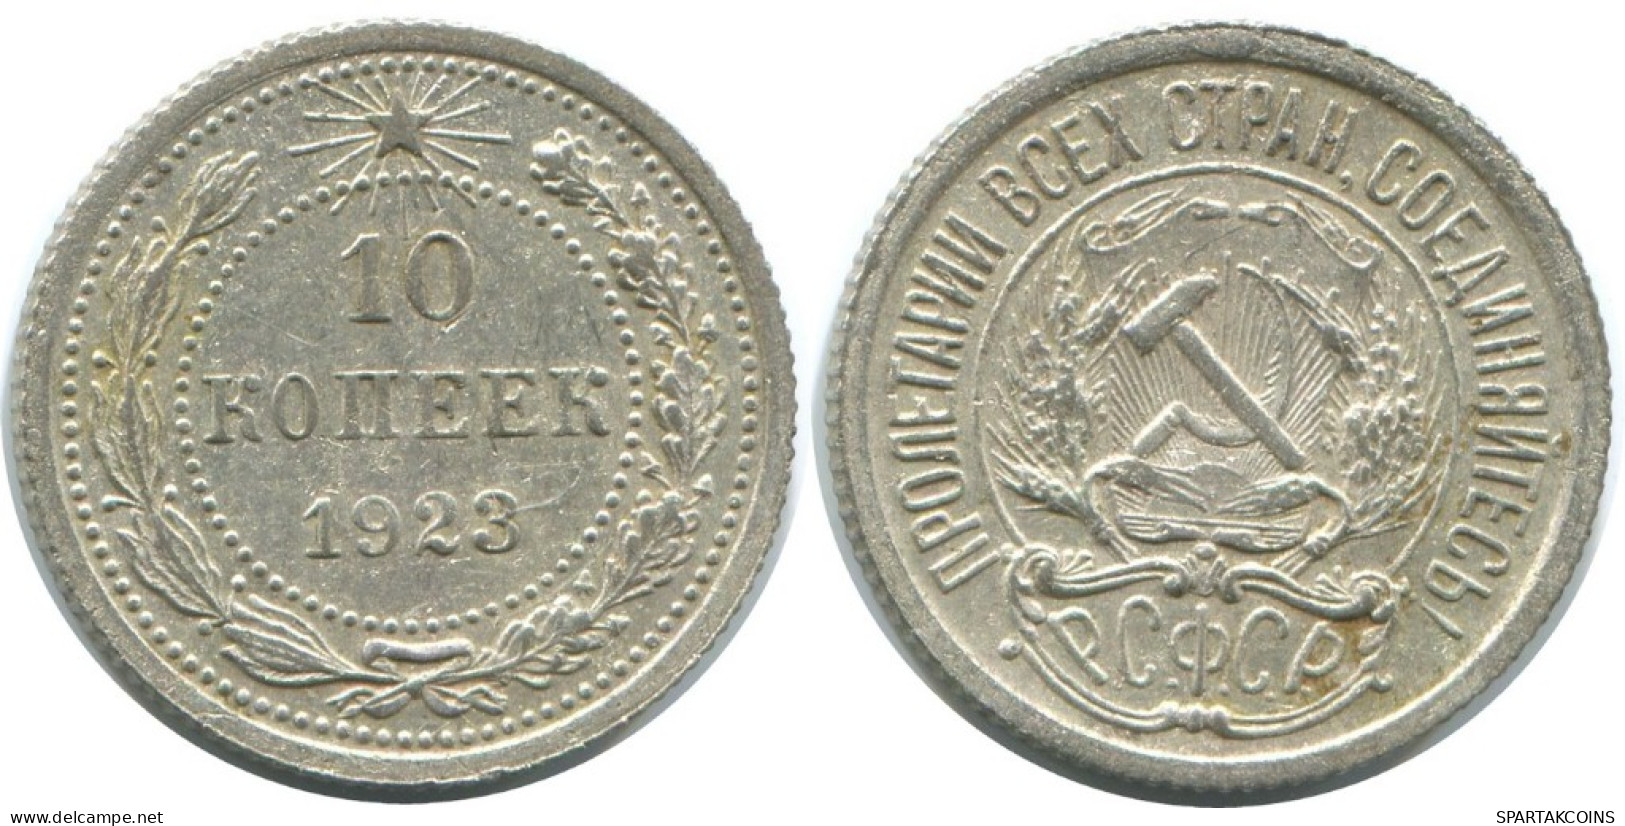 10 KOPEKS 1923 RUSSLAND RUSSIA RSFSR SILBER Münze HIGH GRADE #AE992.4.D.A - Russia